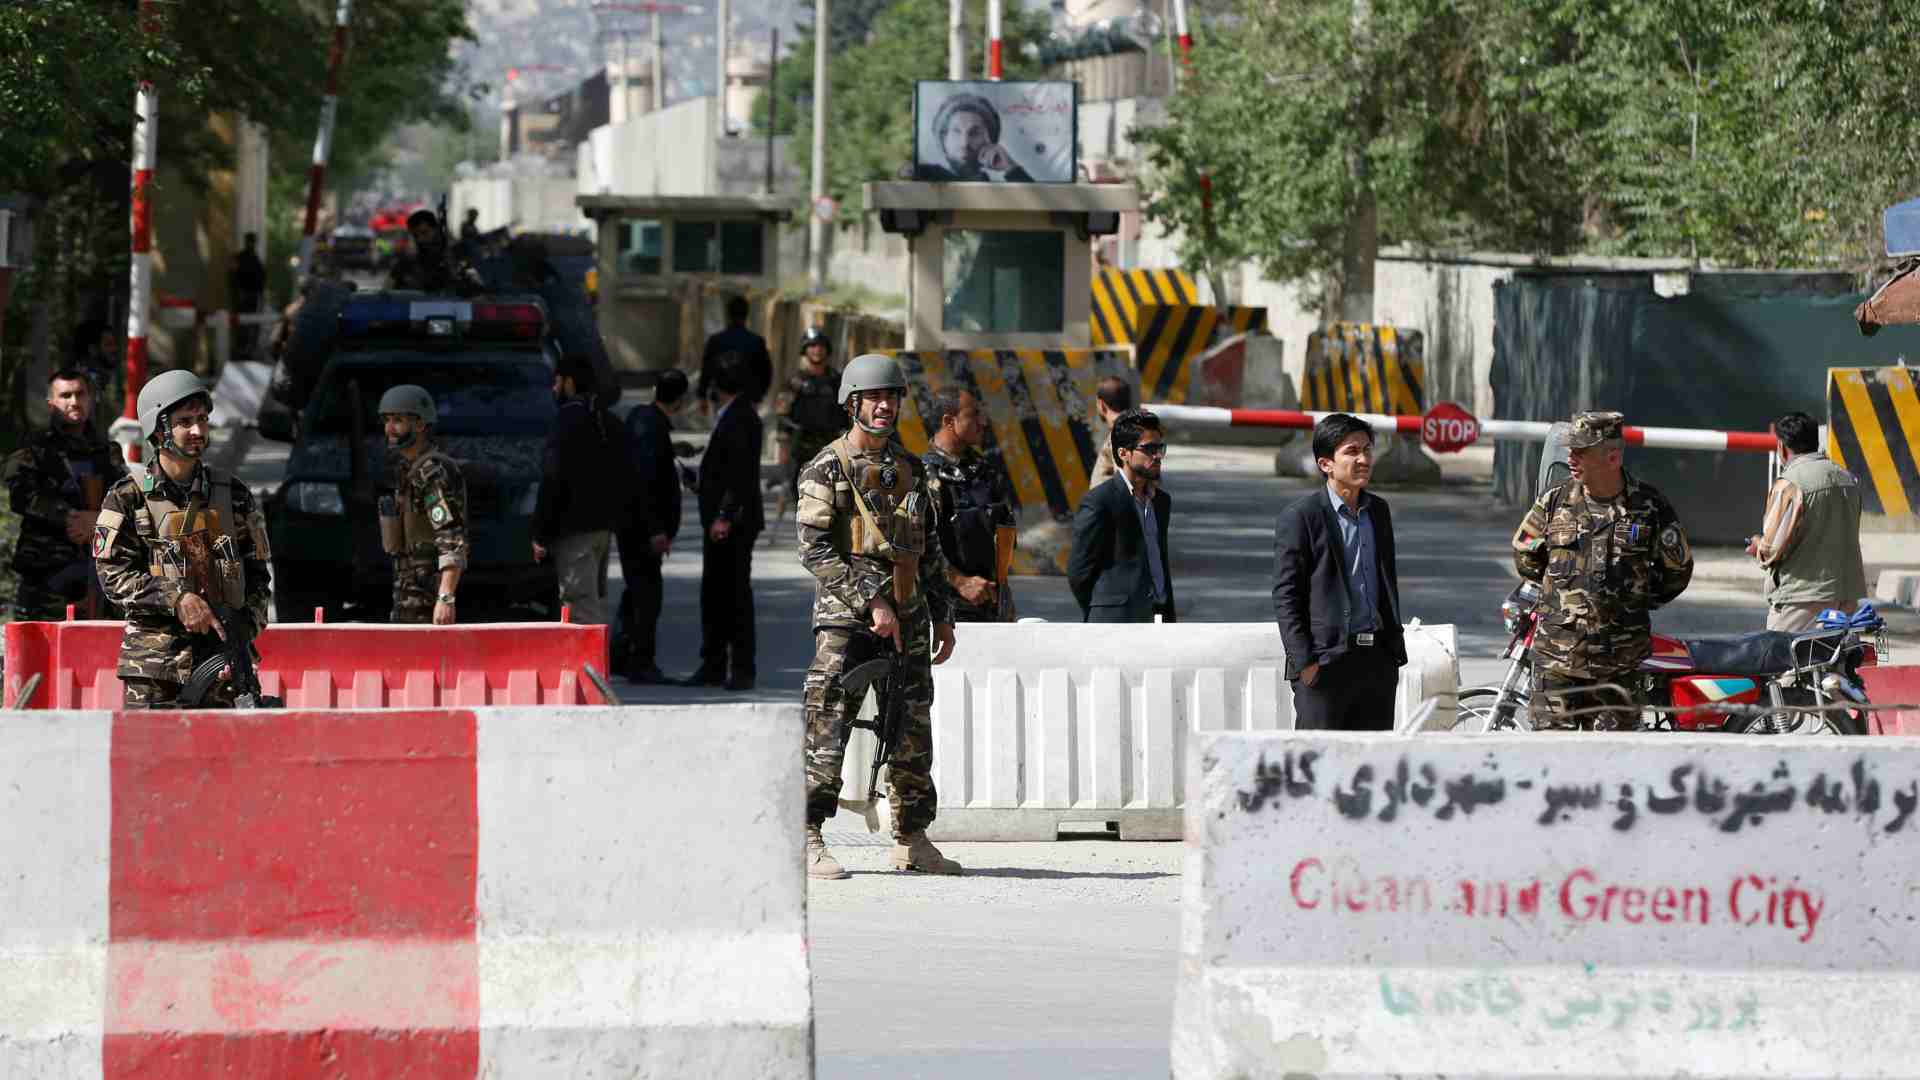 Al menos 25 muertos en un doble atentado suicida en Kabul